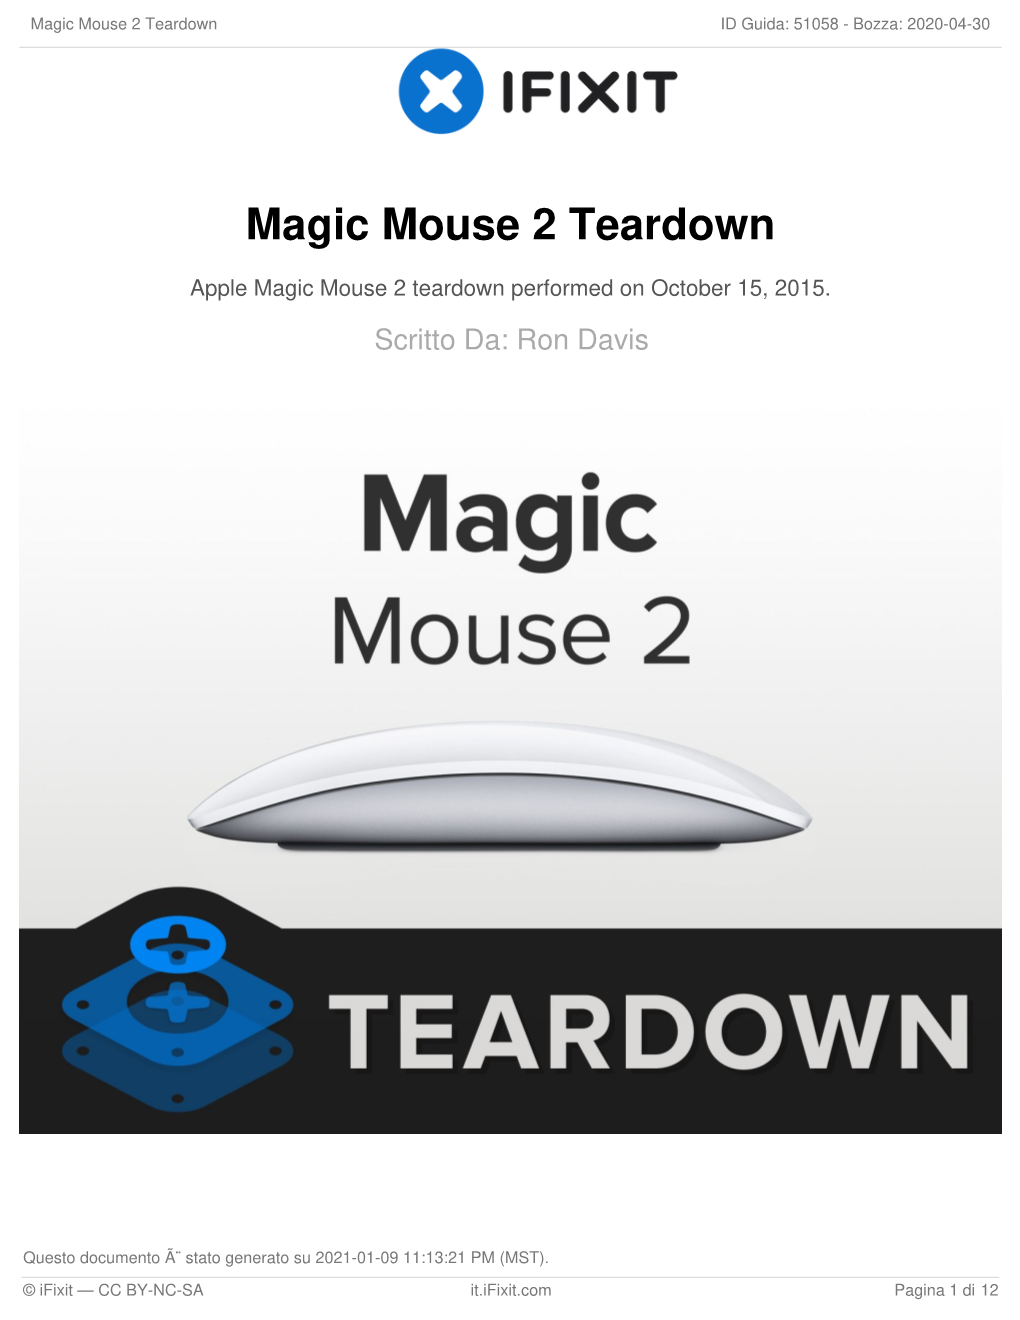 Magic Mouse 2 Teardown ID Guida: 51058 - Bozza: 2020-04-30